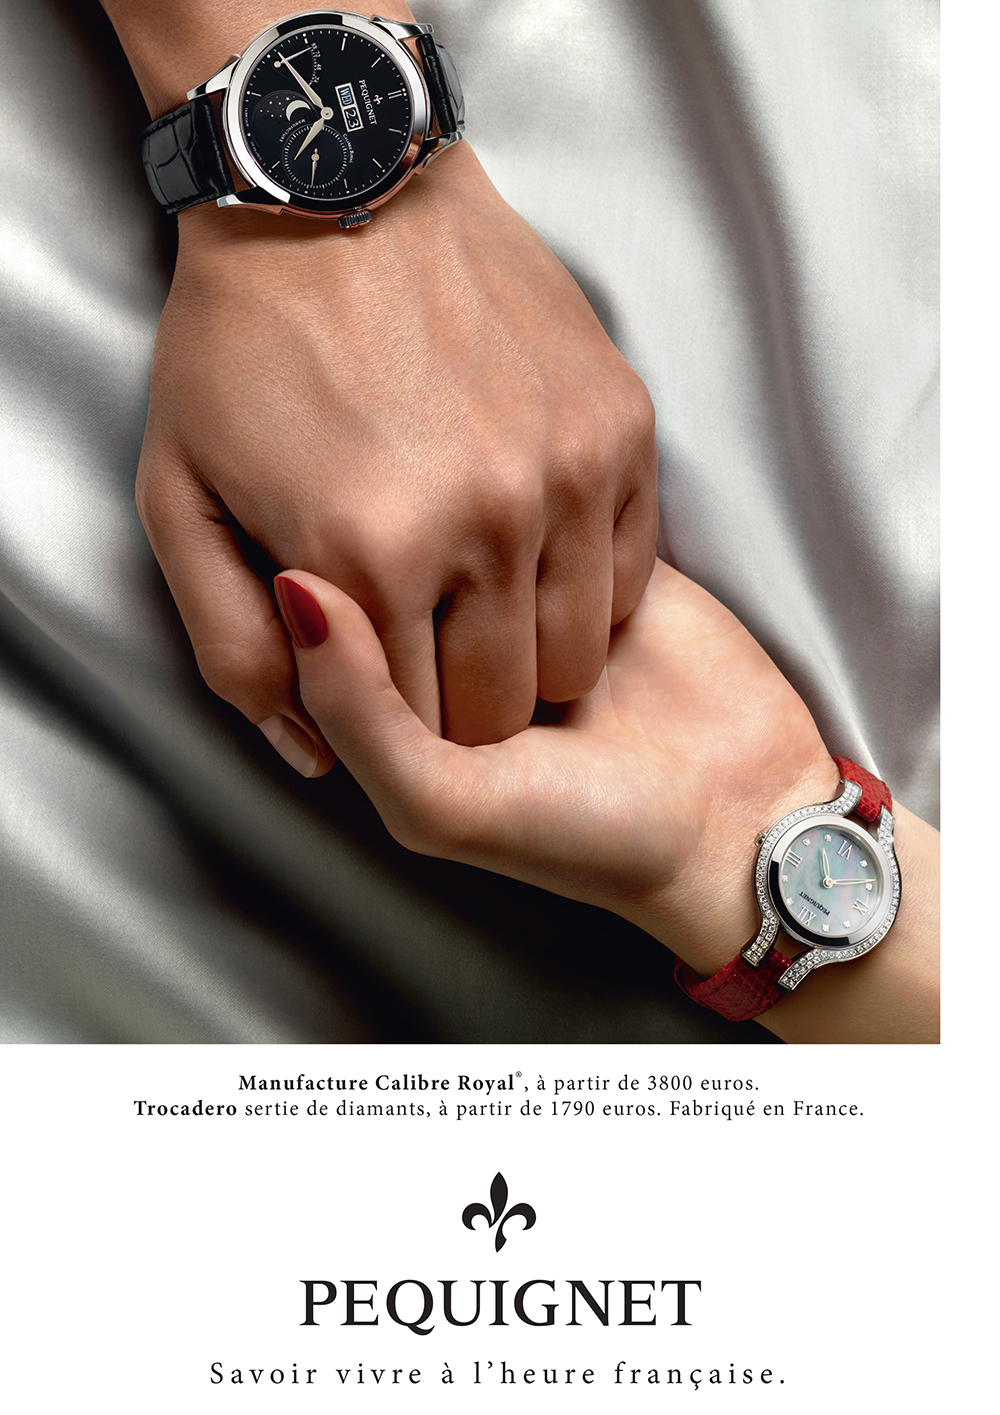 pequignet-montres-publicite-marketing-luxe-savoir-vivre-poignet-agence-buy-ideas-2015-2